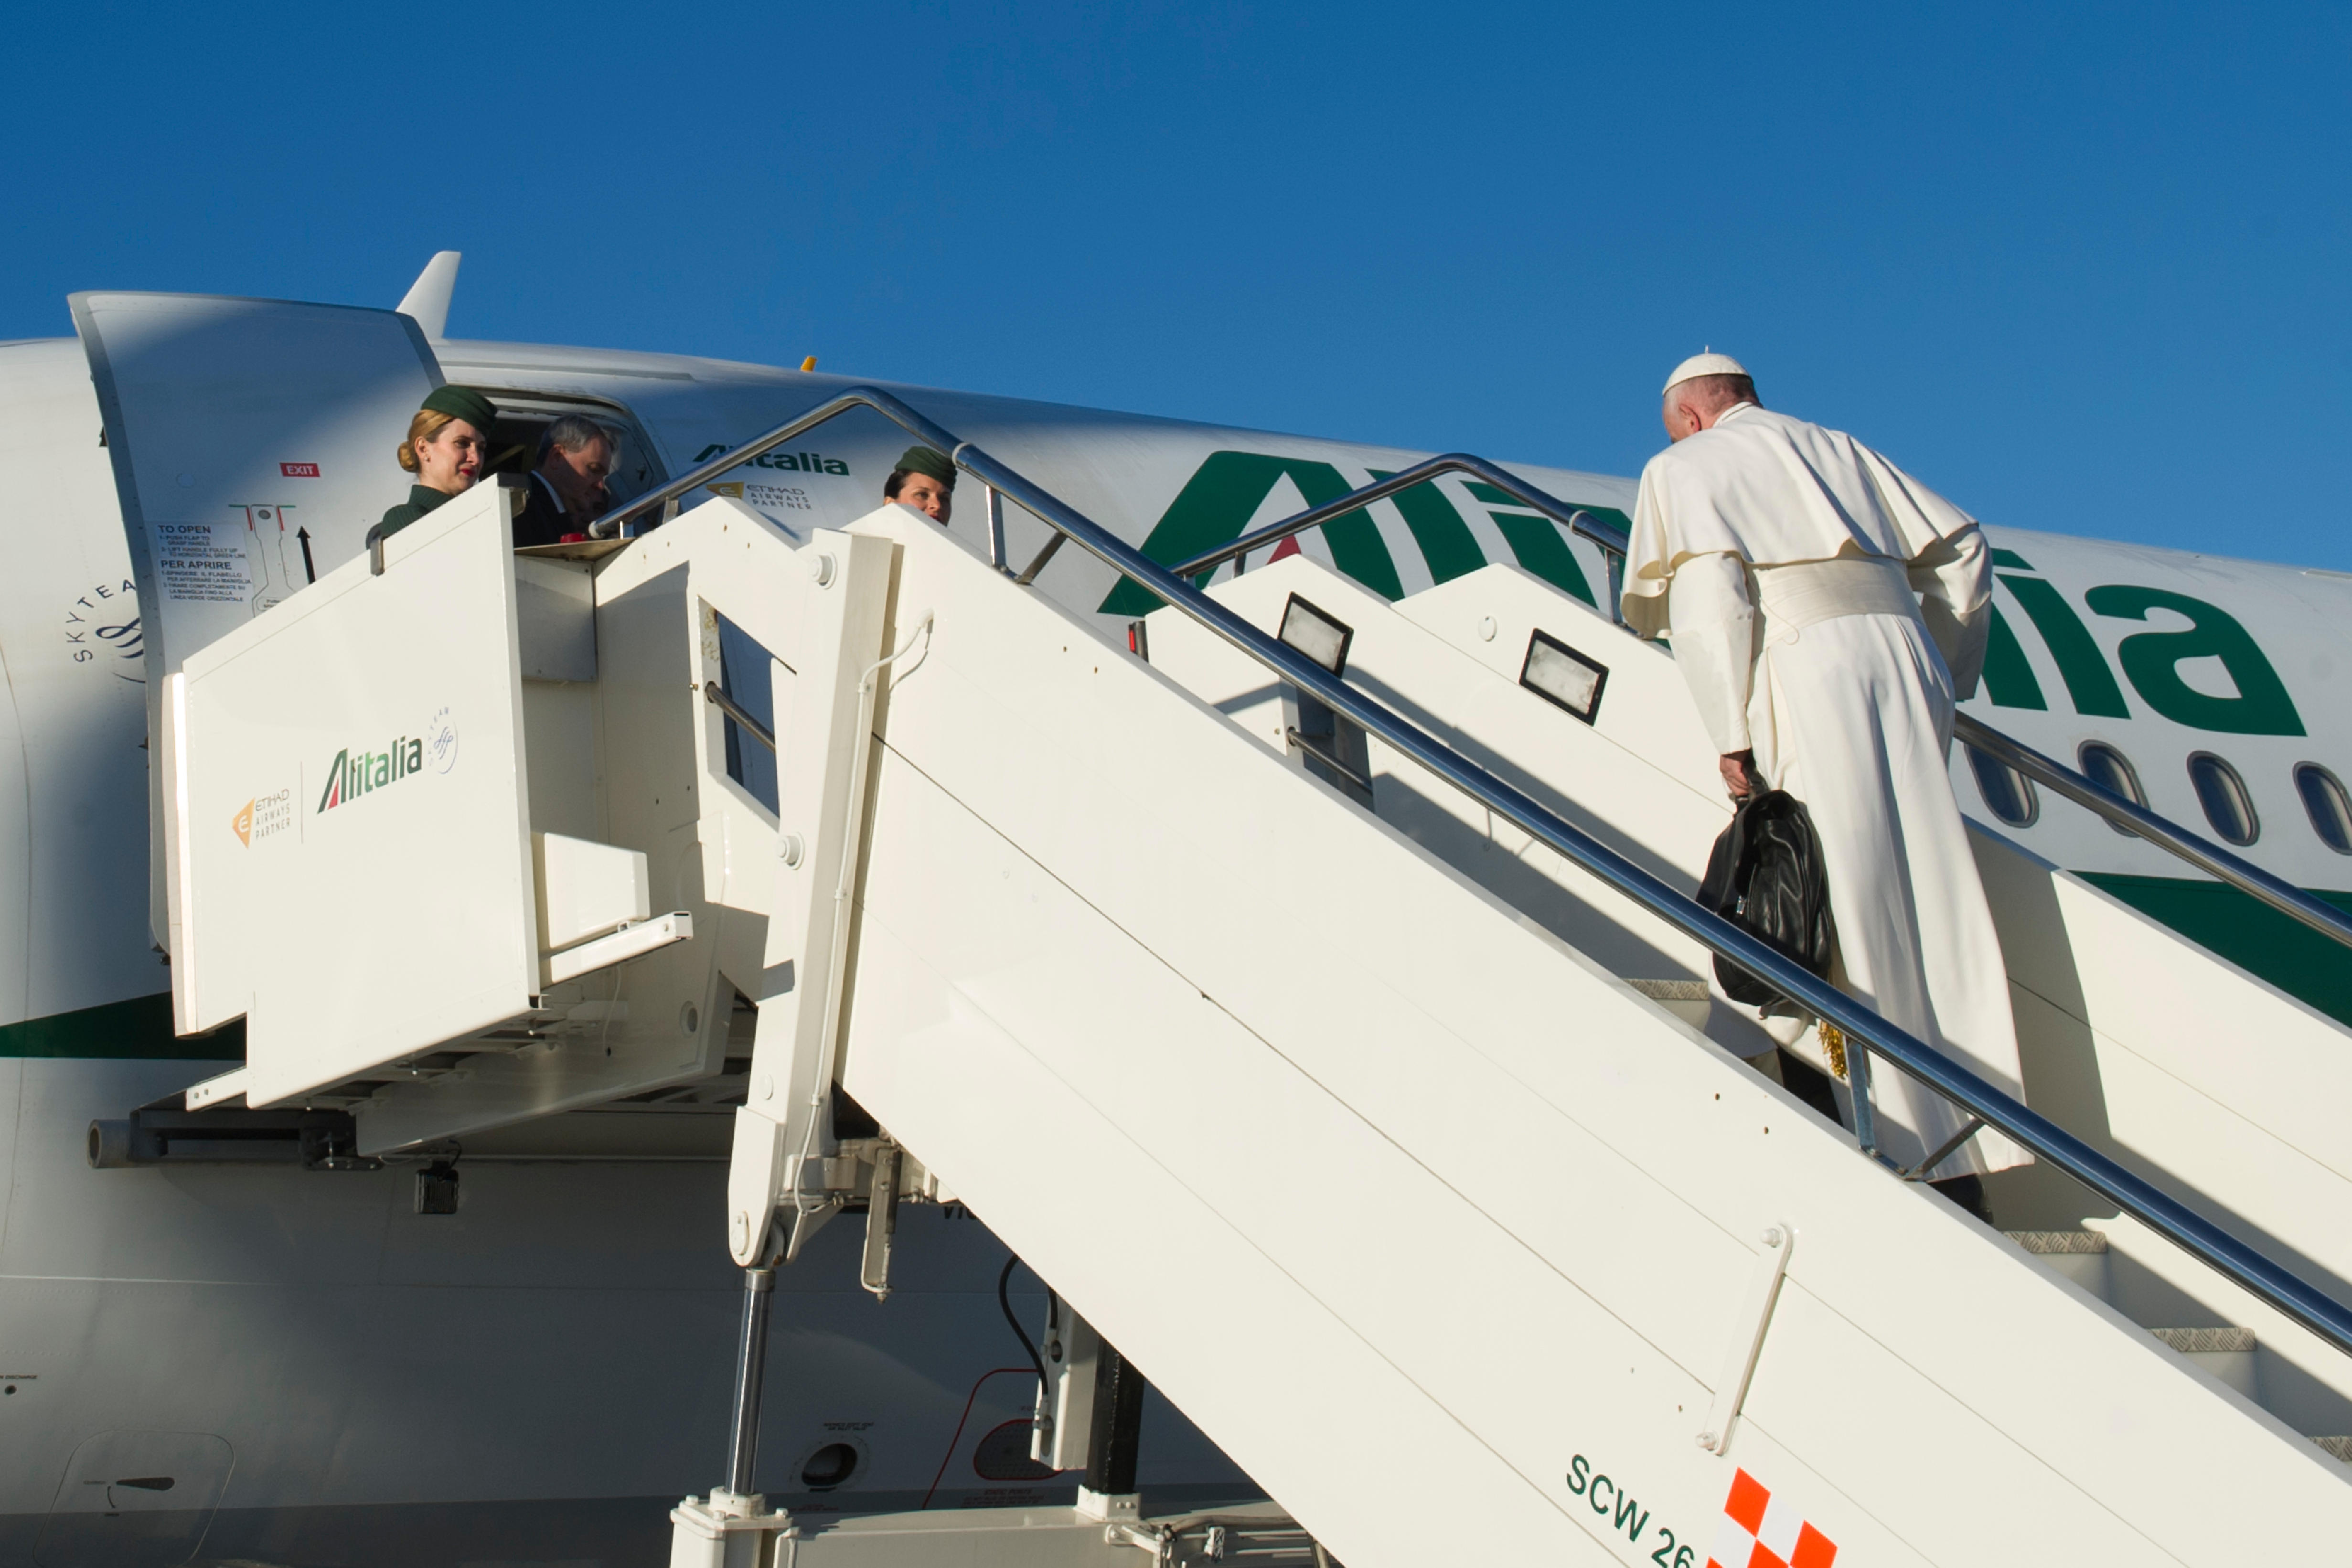 Le pape embarque pour la Suède à bord d'un avion Alitalia @ L'Osservatore Romano